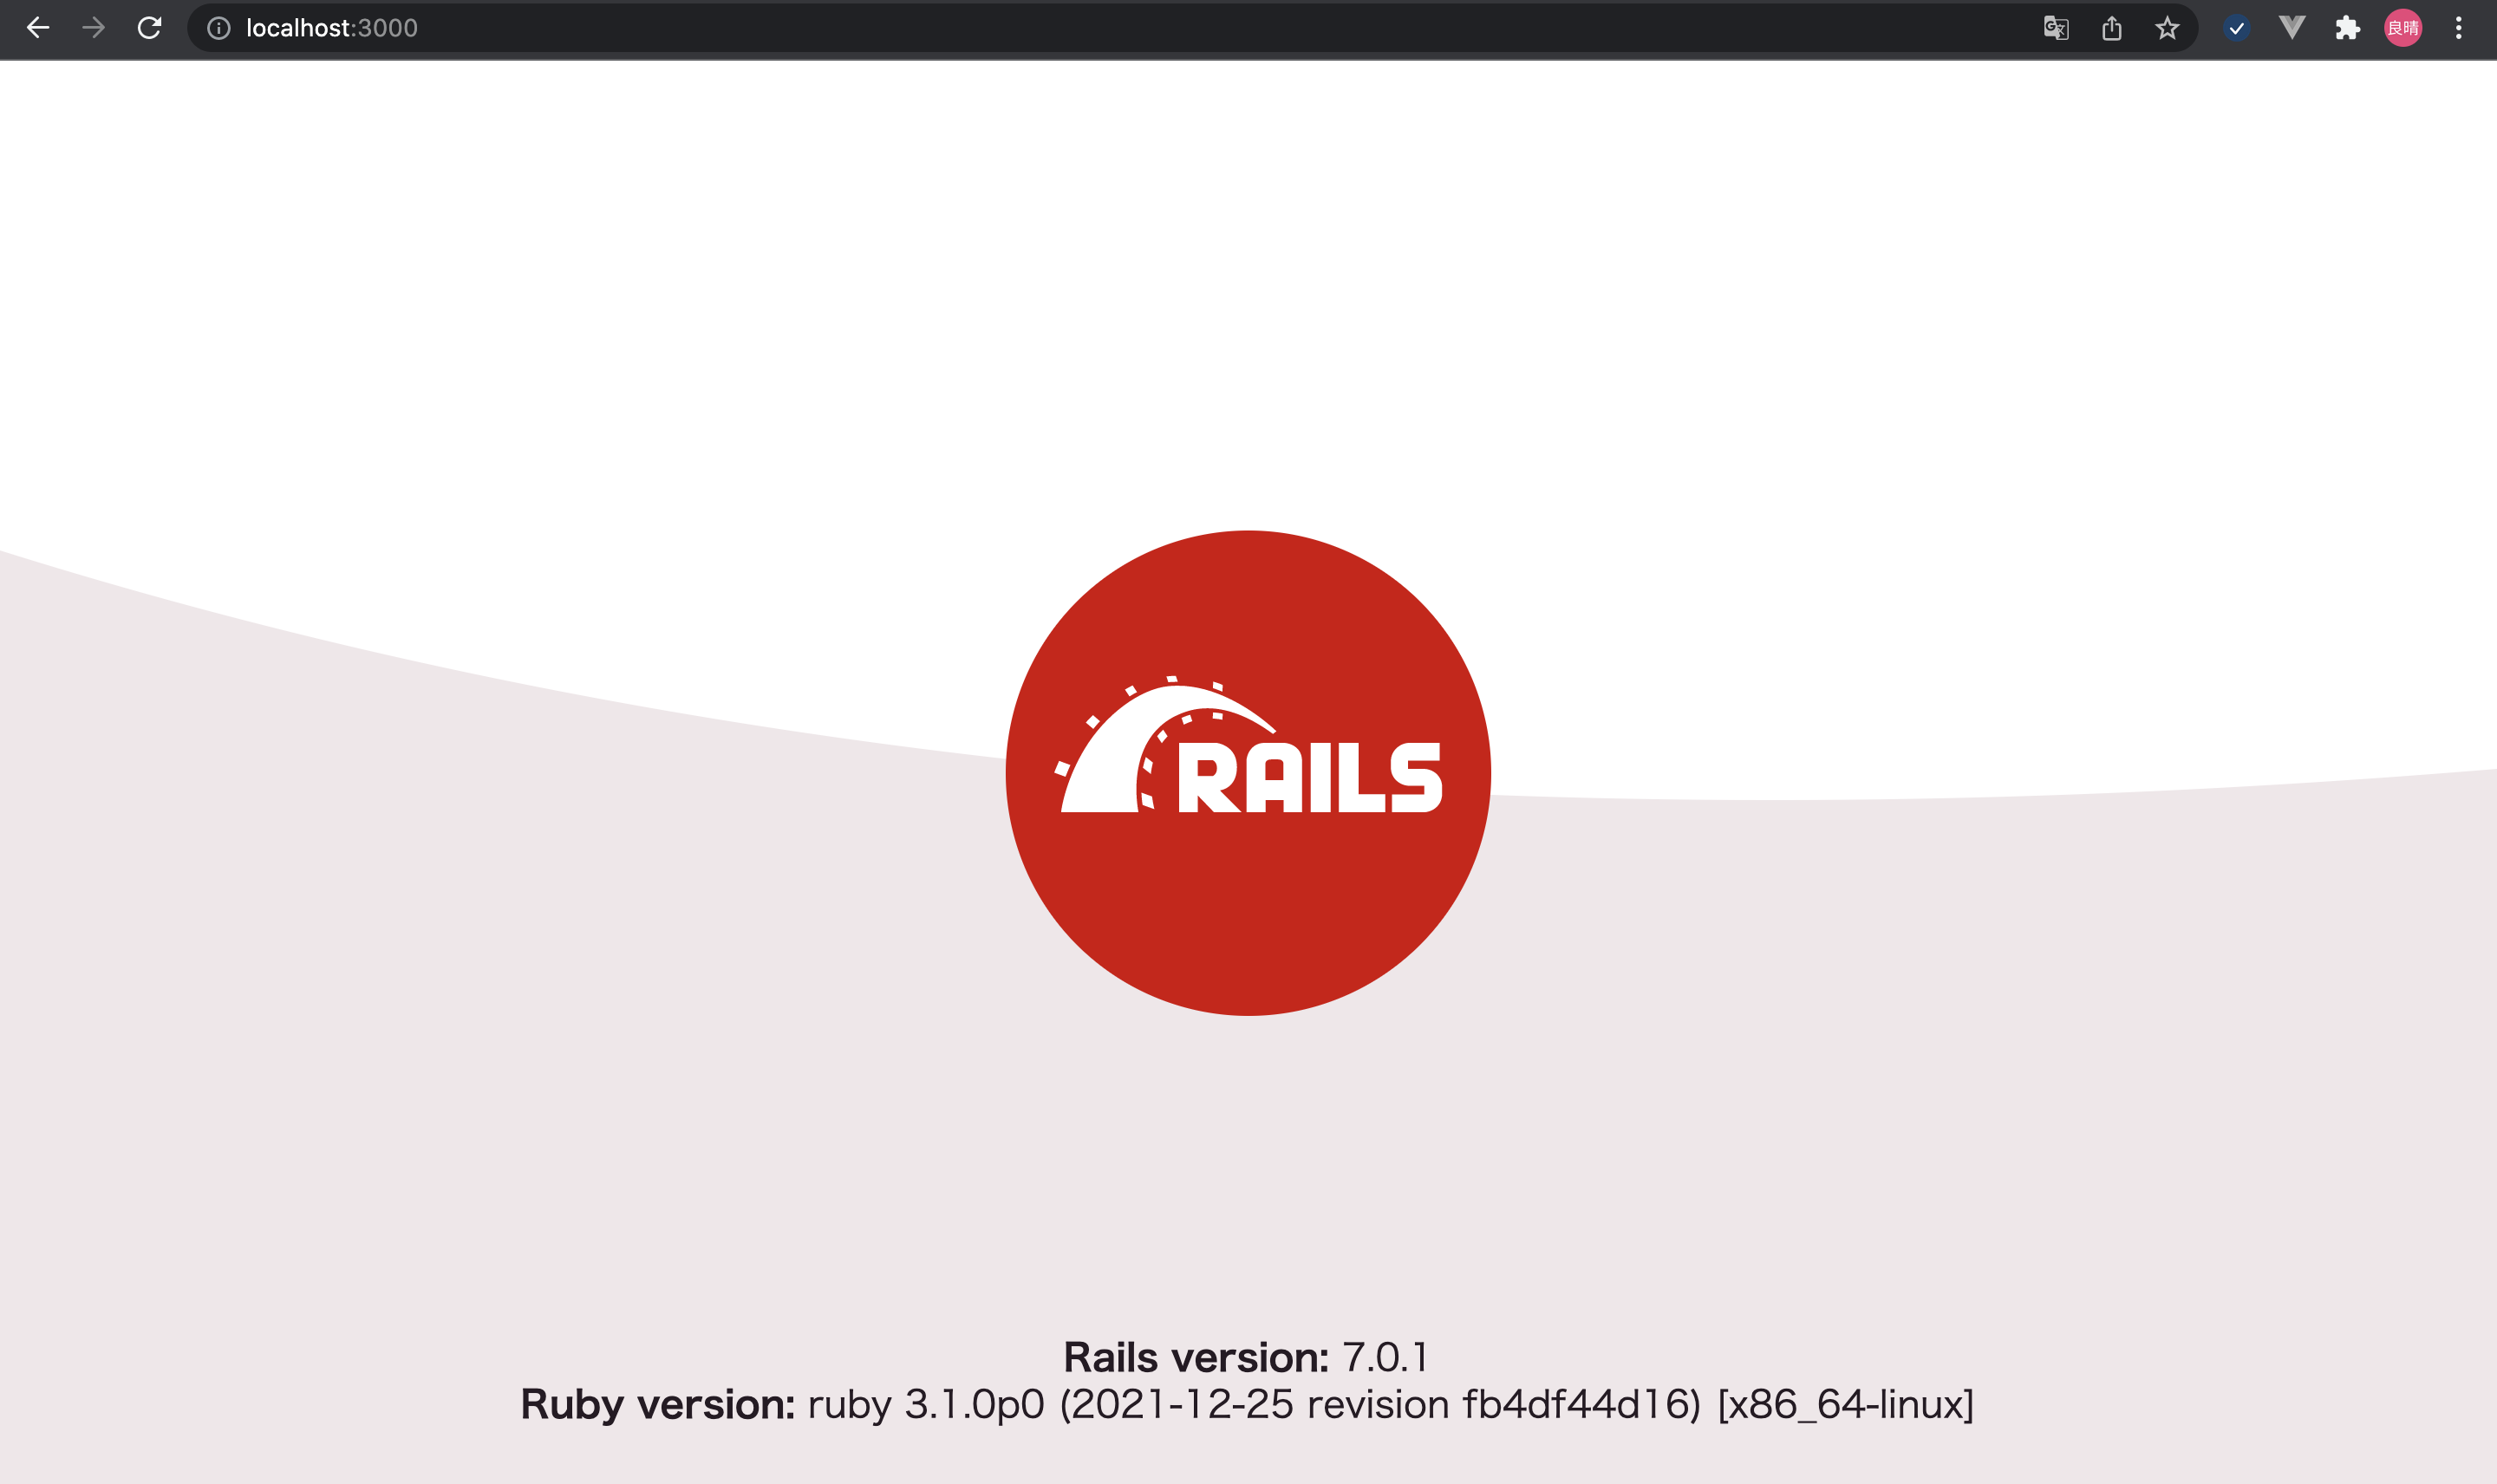 Railsデモ画面